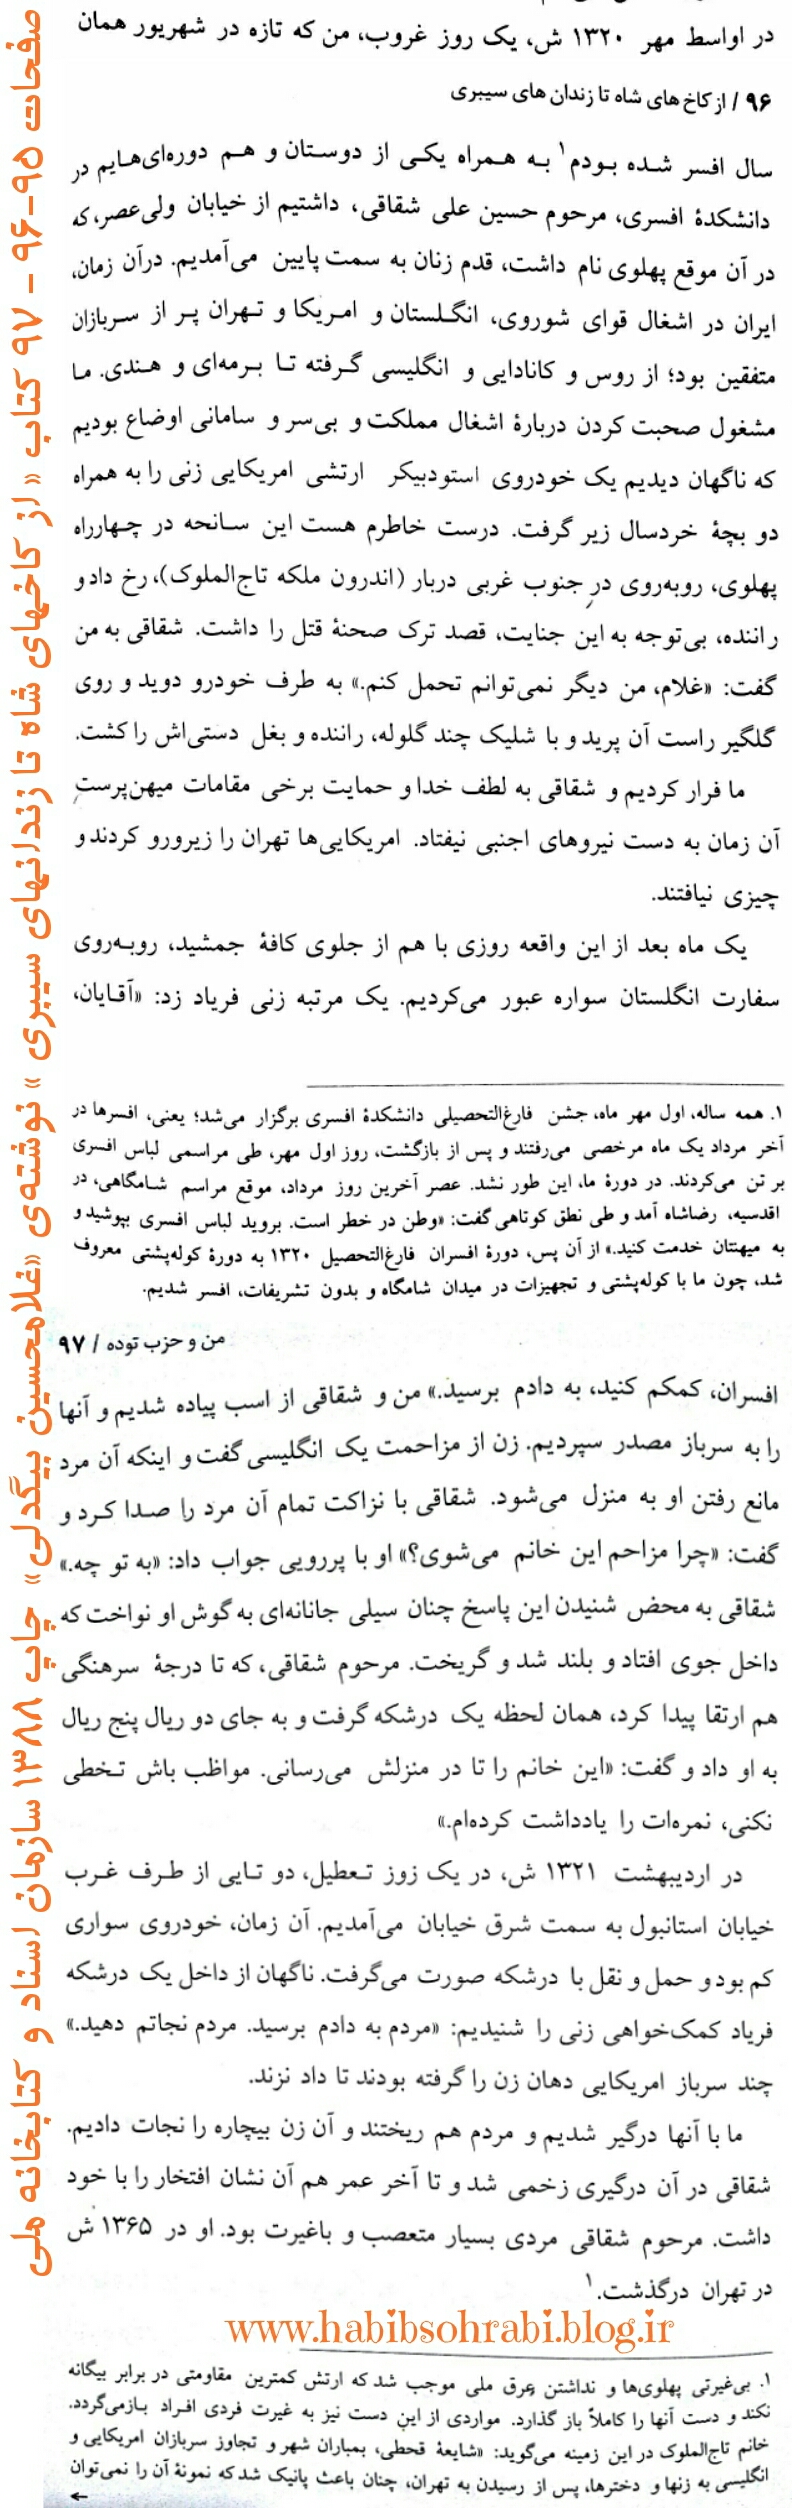 صفحه ای از کتاب از کاخهای شاه تا زندانهای سیبری